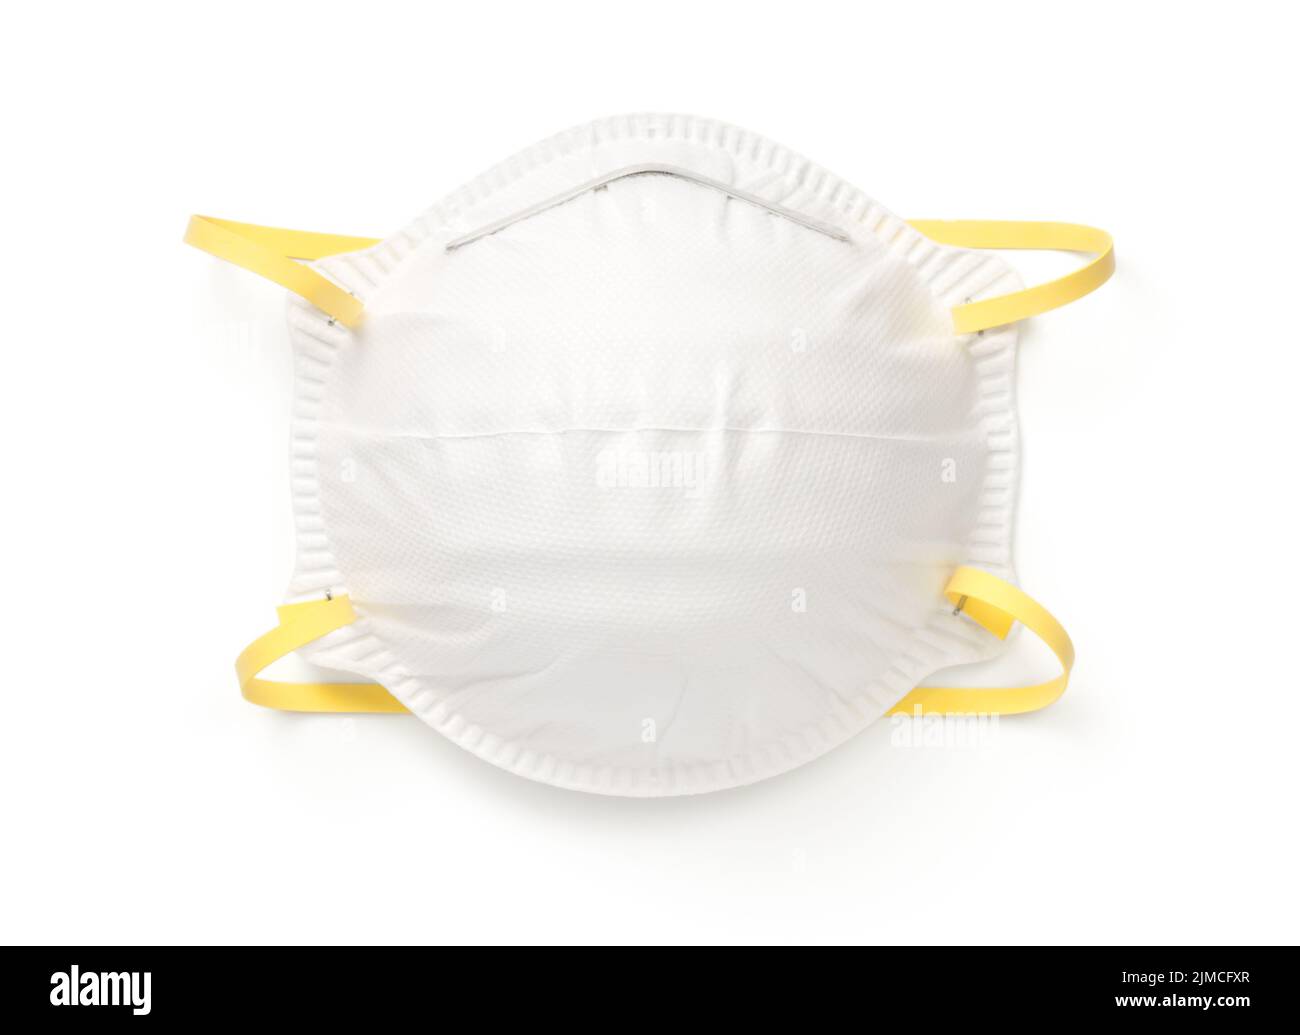 Maschera di protezione respiratoria isolata su sfondo bianco Foto Stock